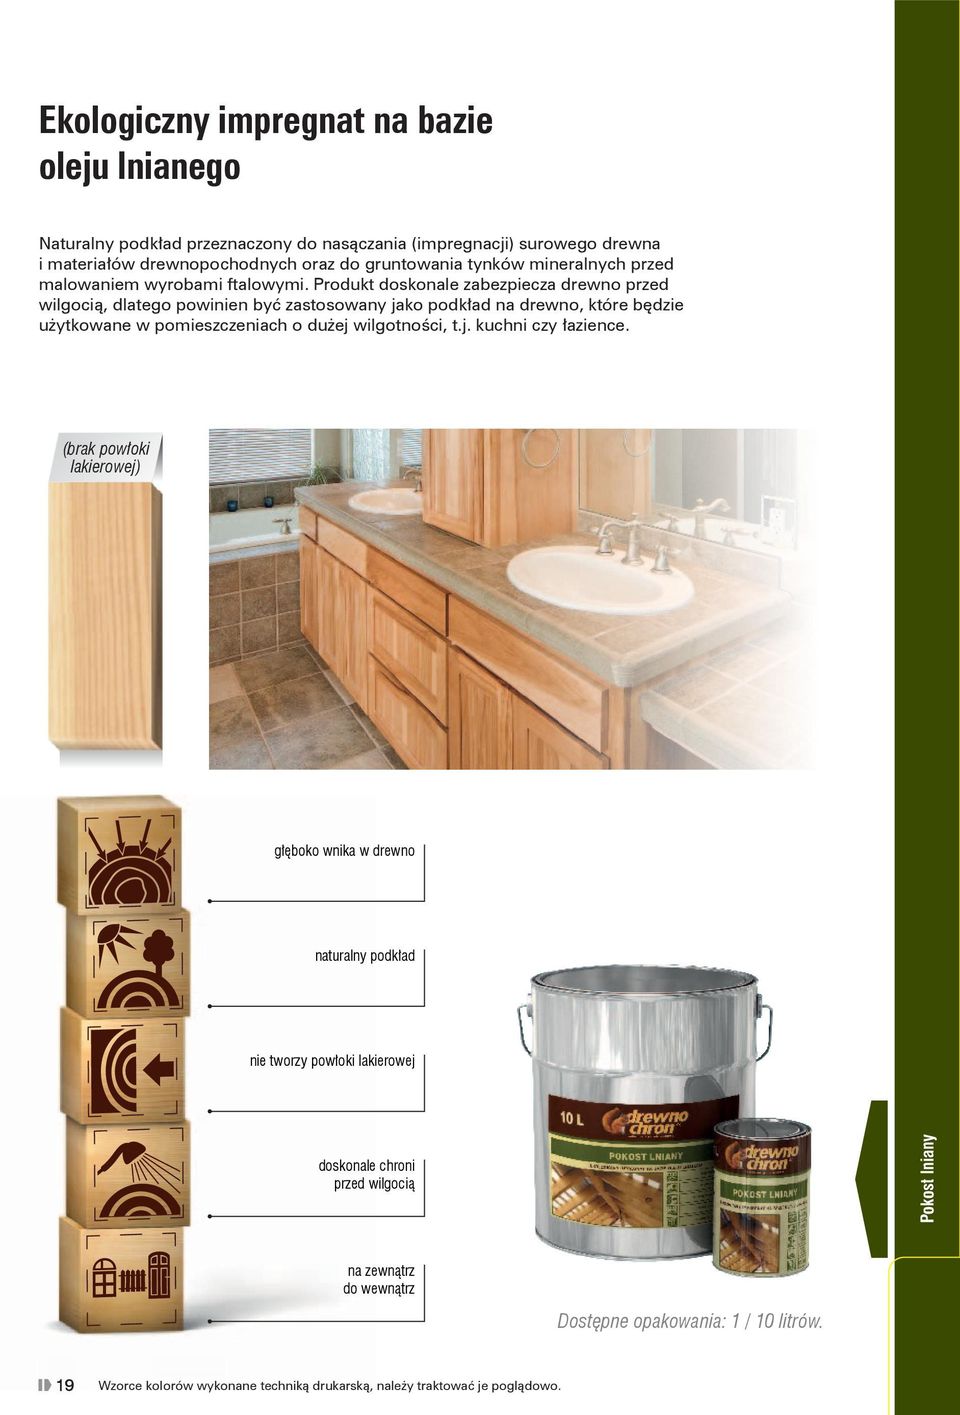 Produkt doskonale zabezpiecza drewno przed wilgocią, dlatego powinien być zastosowany jako podkład na drewno, które będzie użytkowane w pomieszczeniach o dużej wilgotności, t.j. kuchni czy łazience.